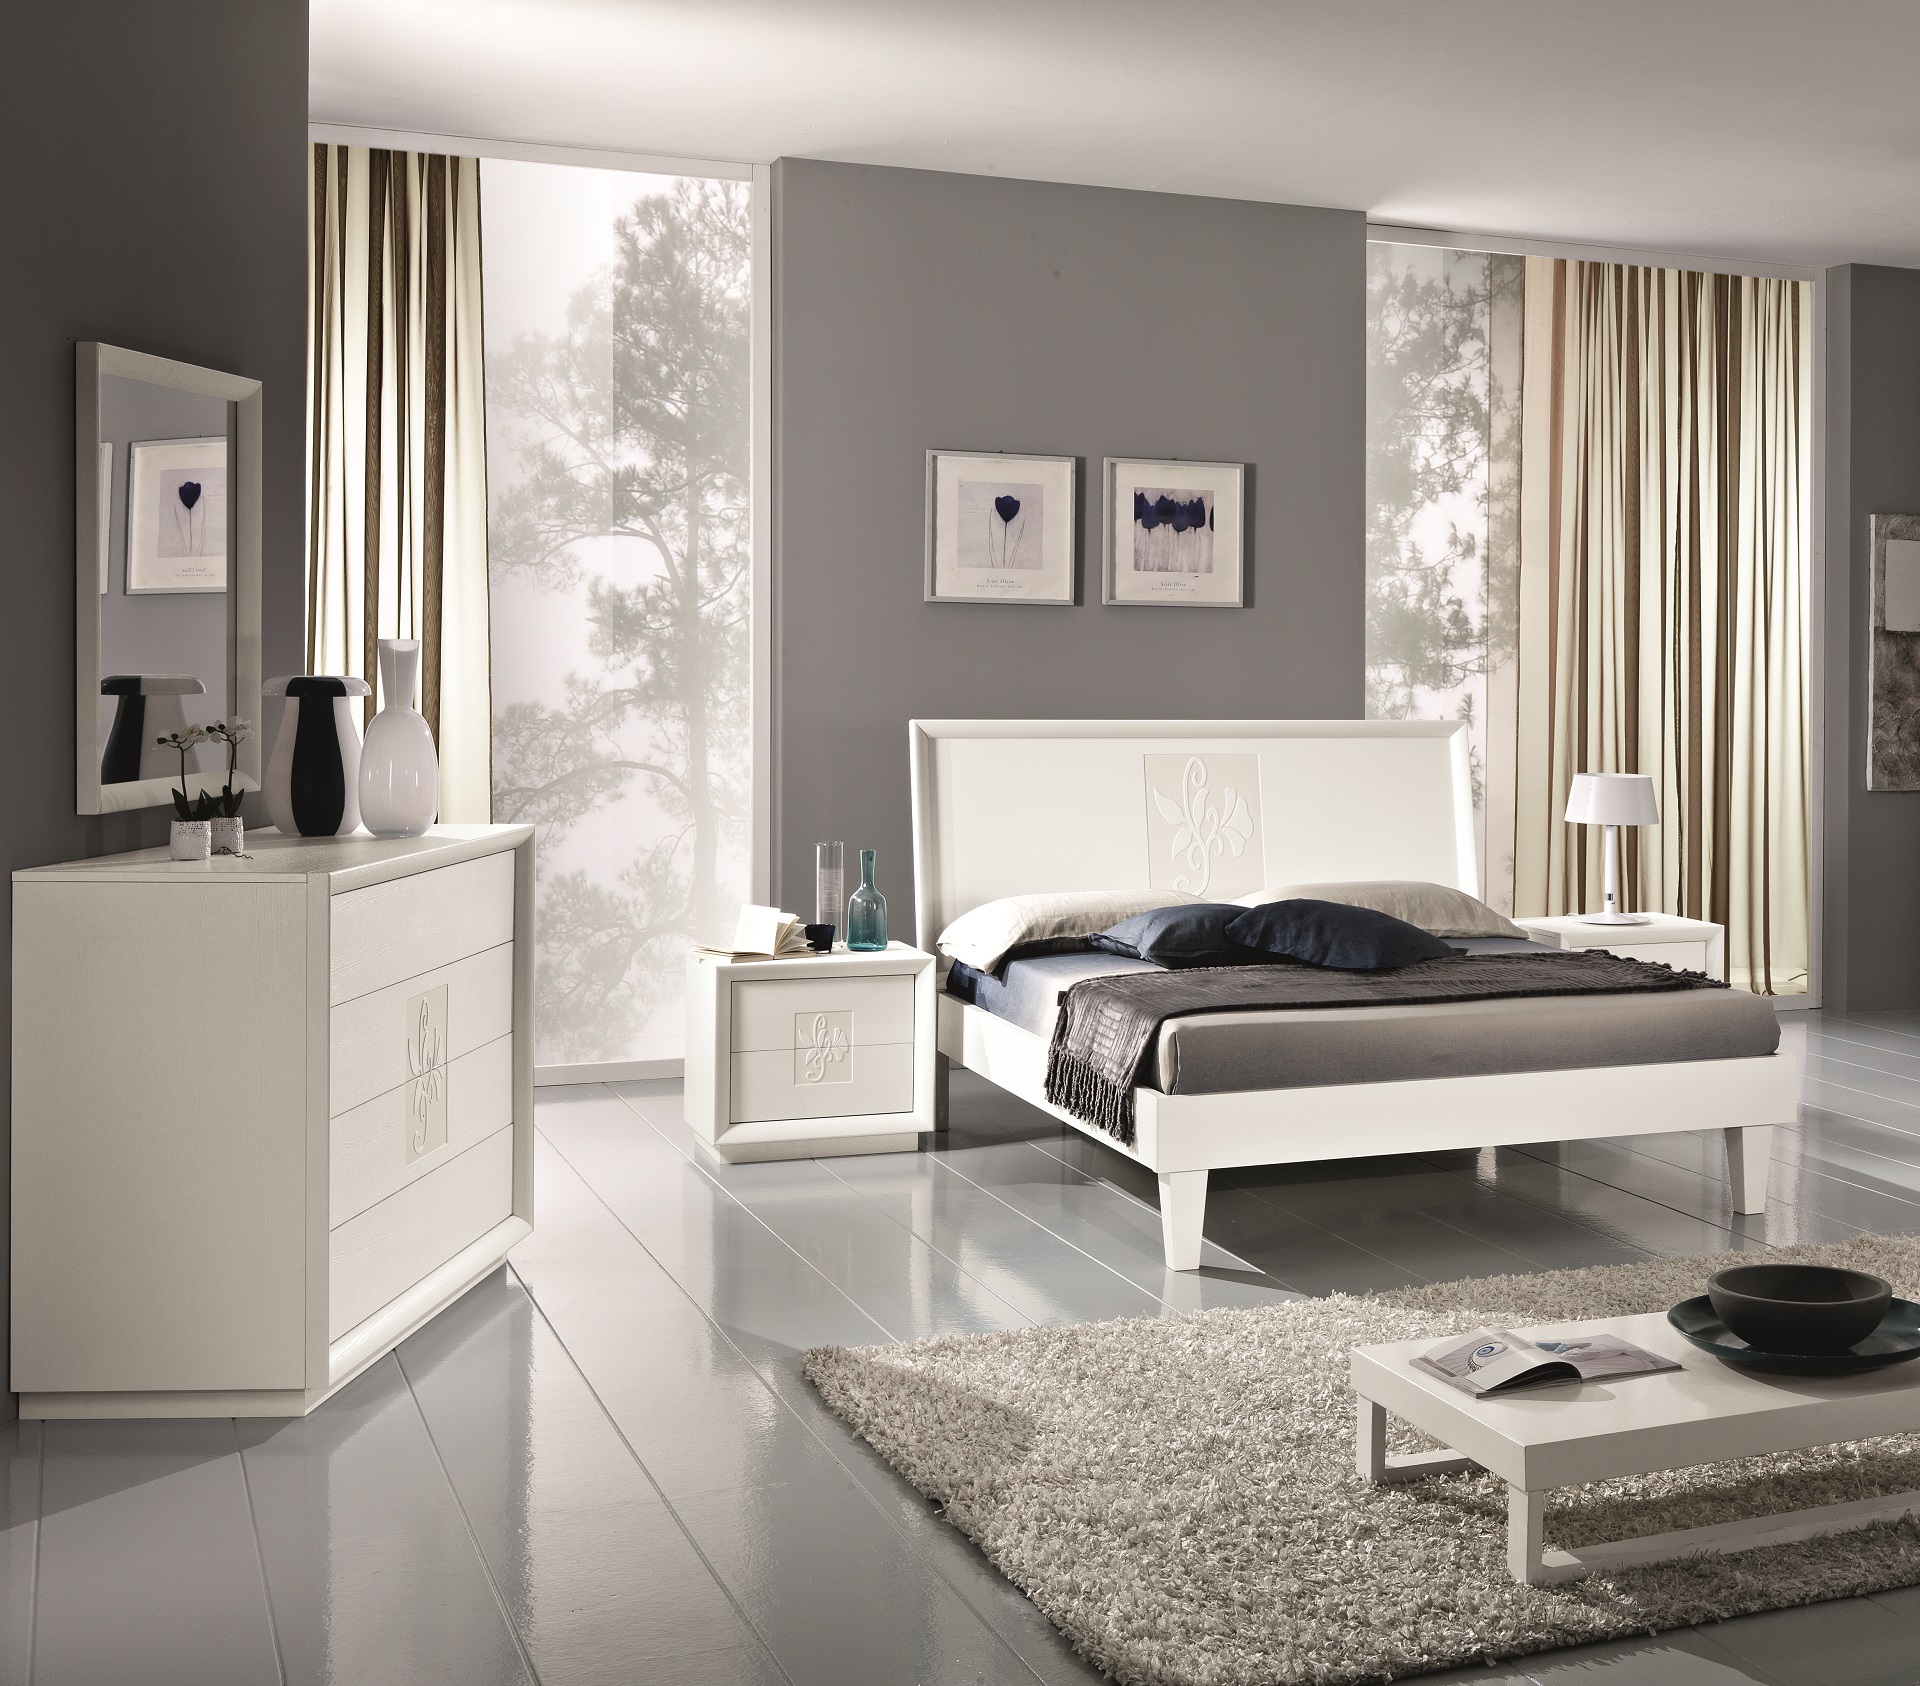 Lo stile moderno di una camera da letto